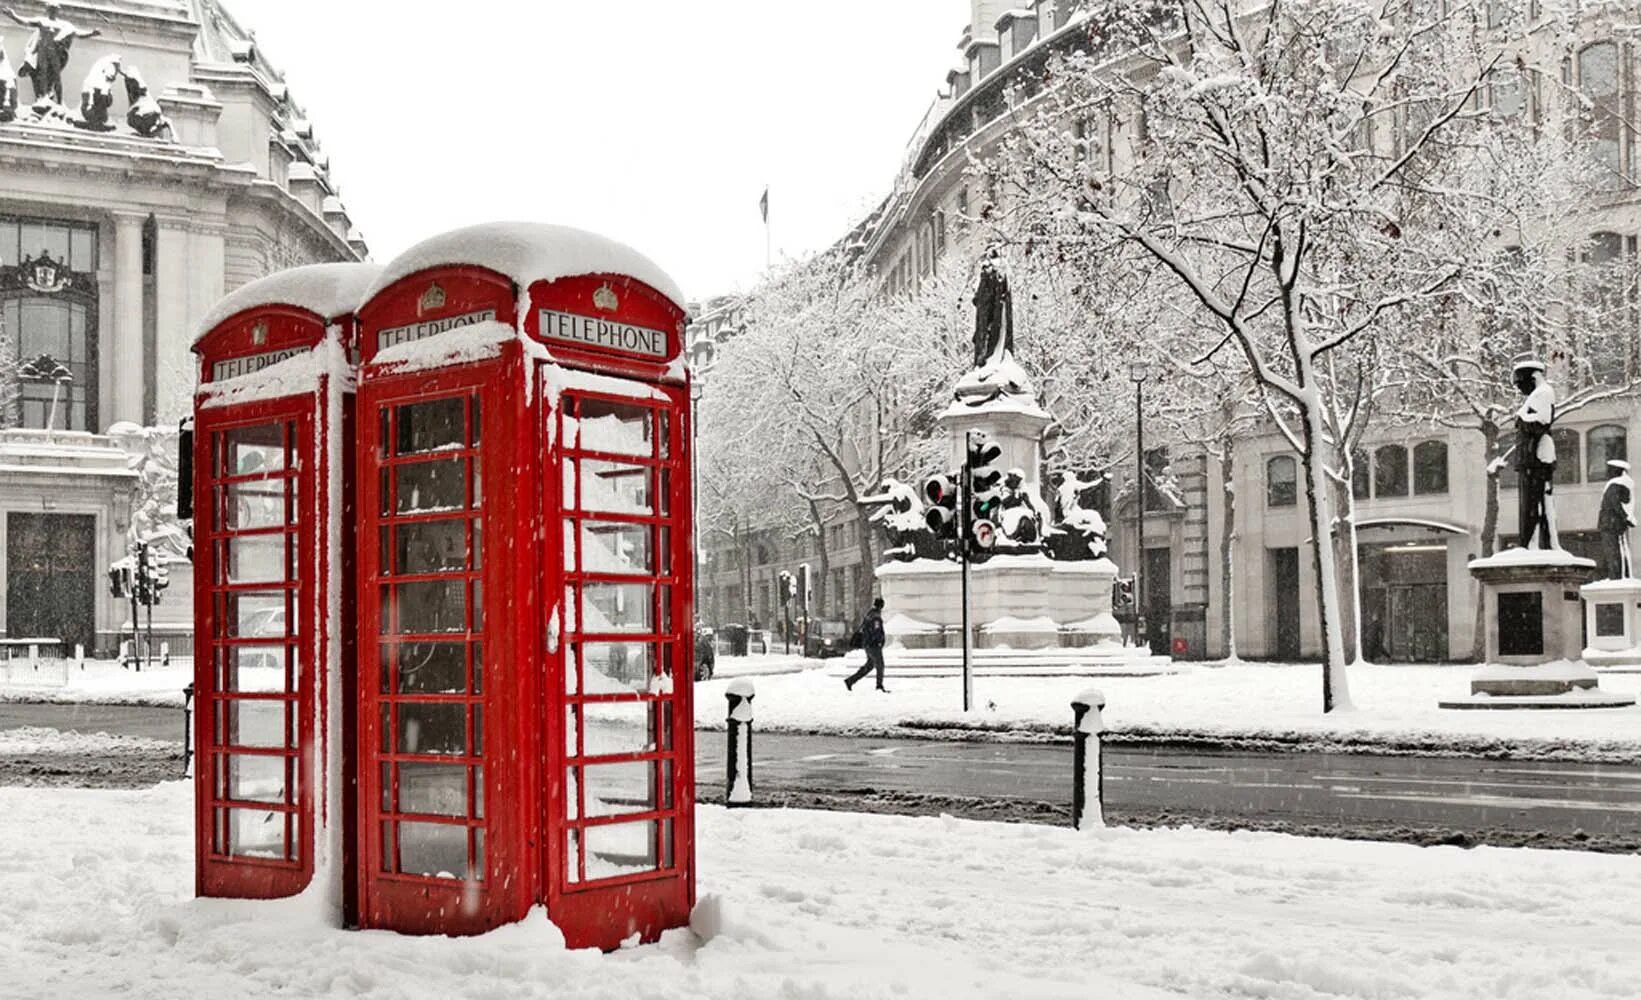 Лондон зимой. Зимний Лондон Вайб. Столица Англии – Лондон зимой. Снег в Лондоне.